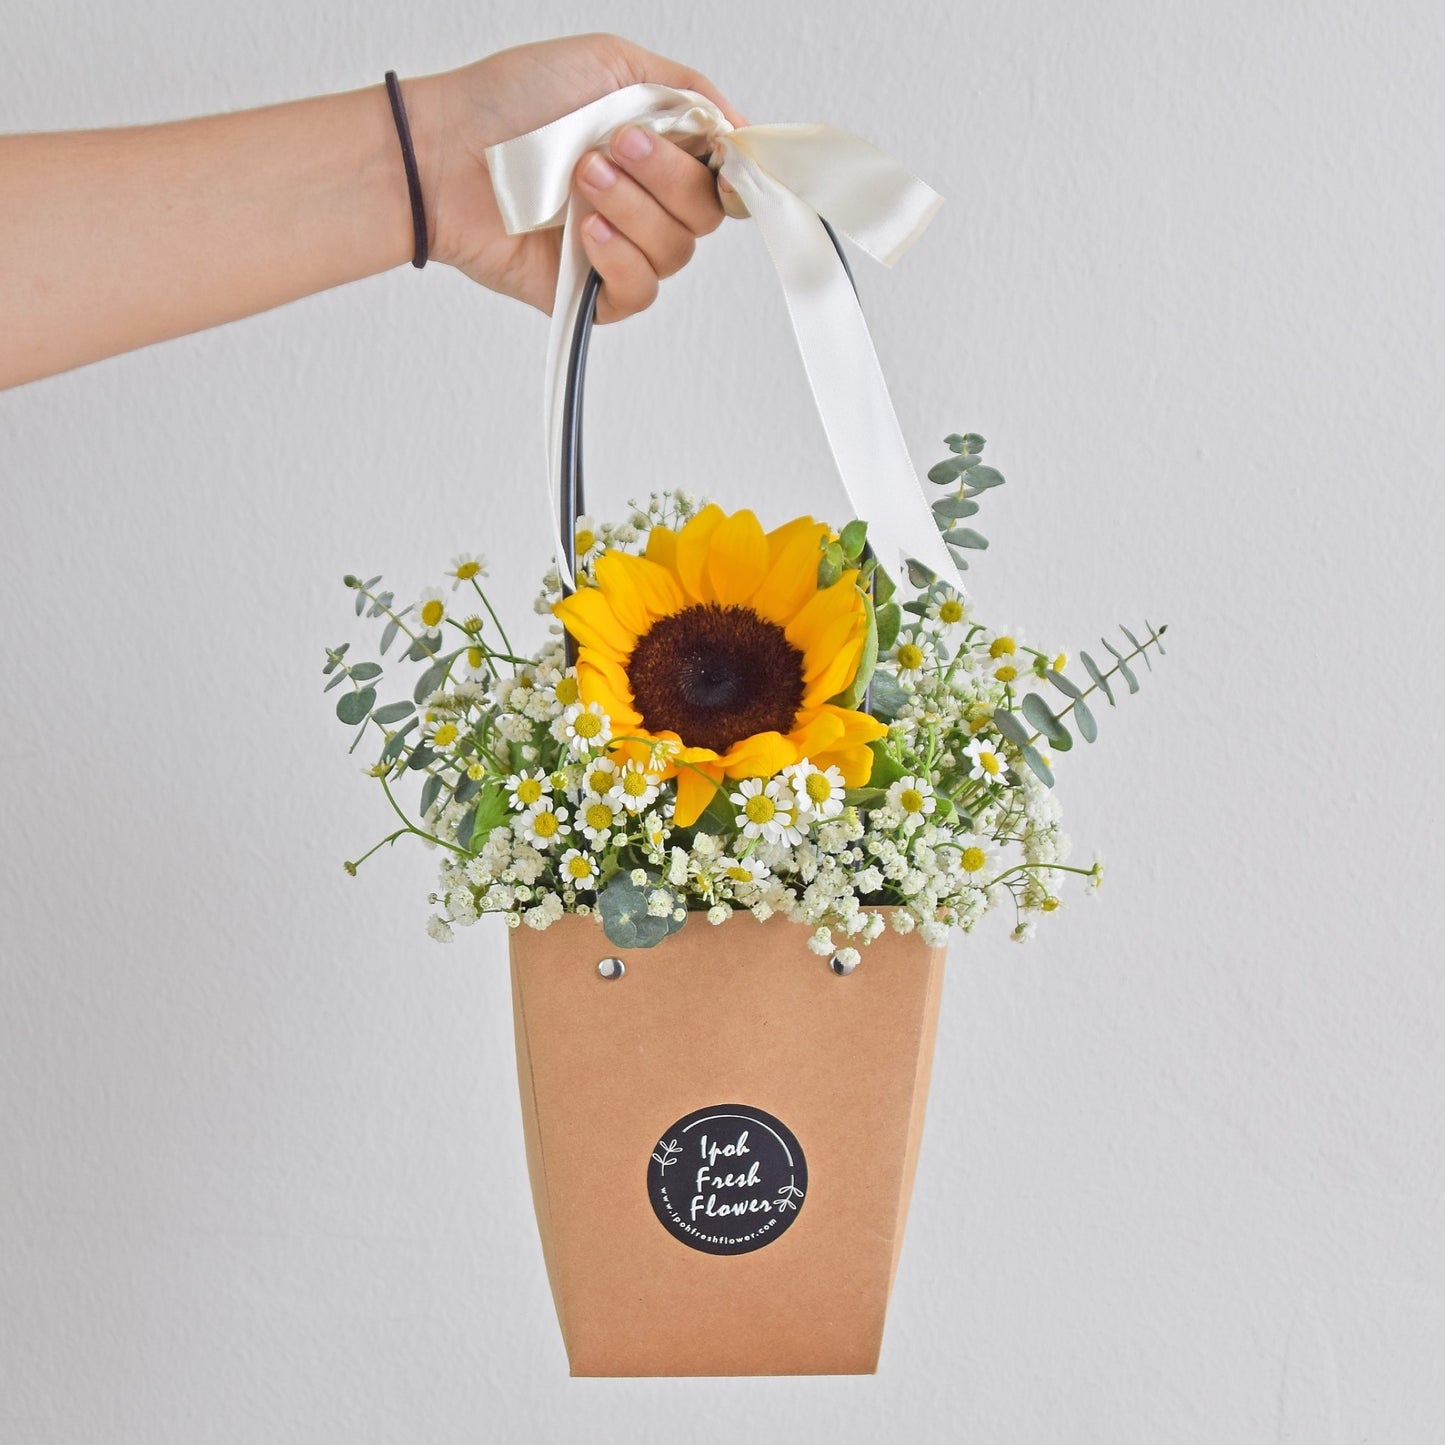 Jolly | Sunflower & Baby breath flower basket